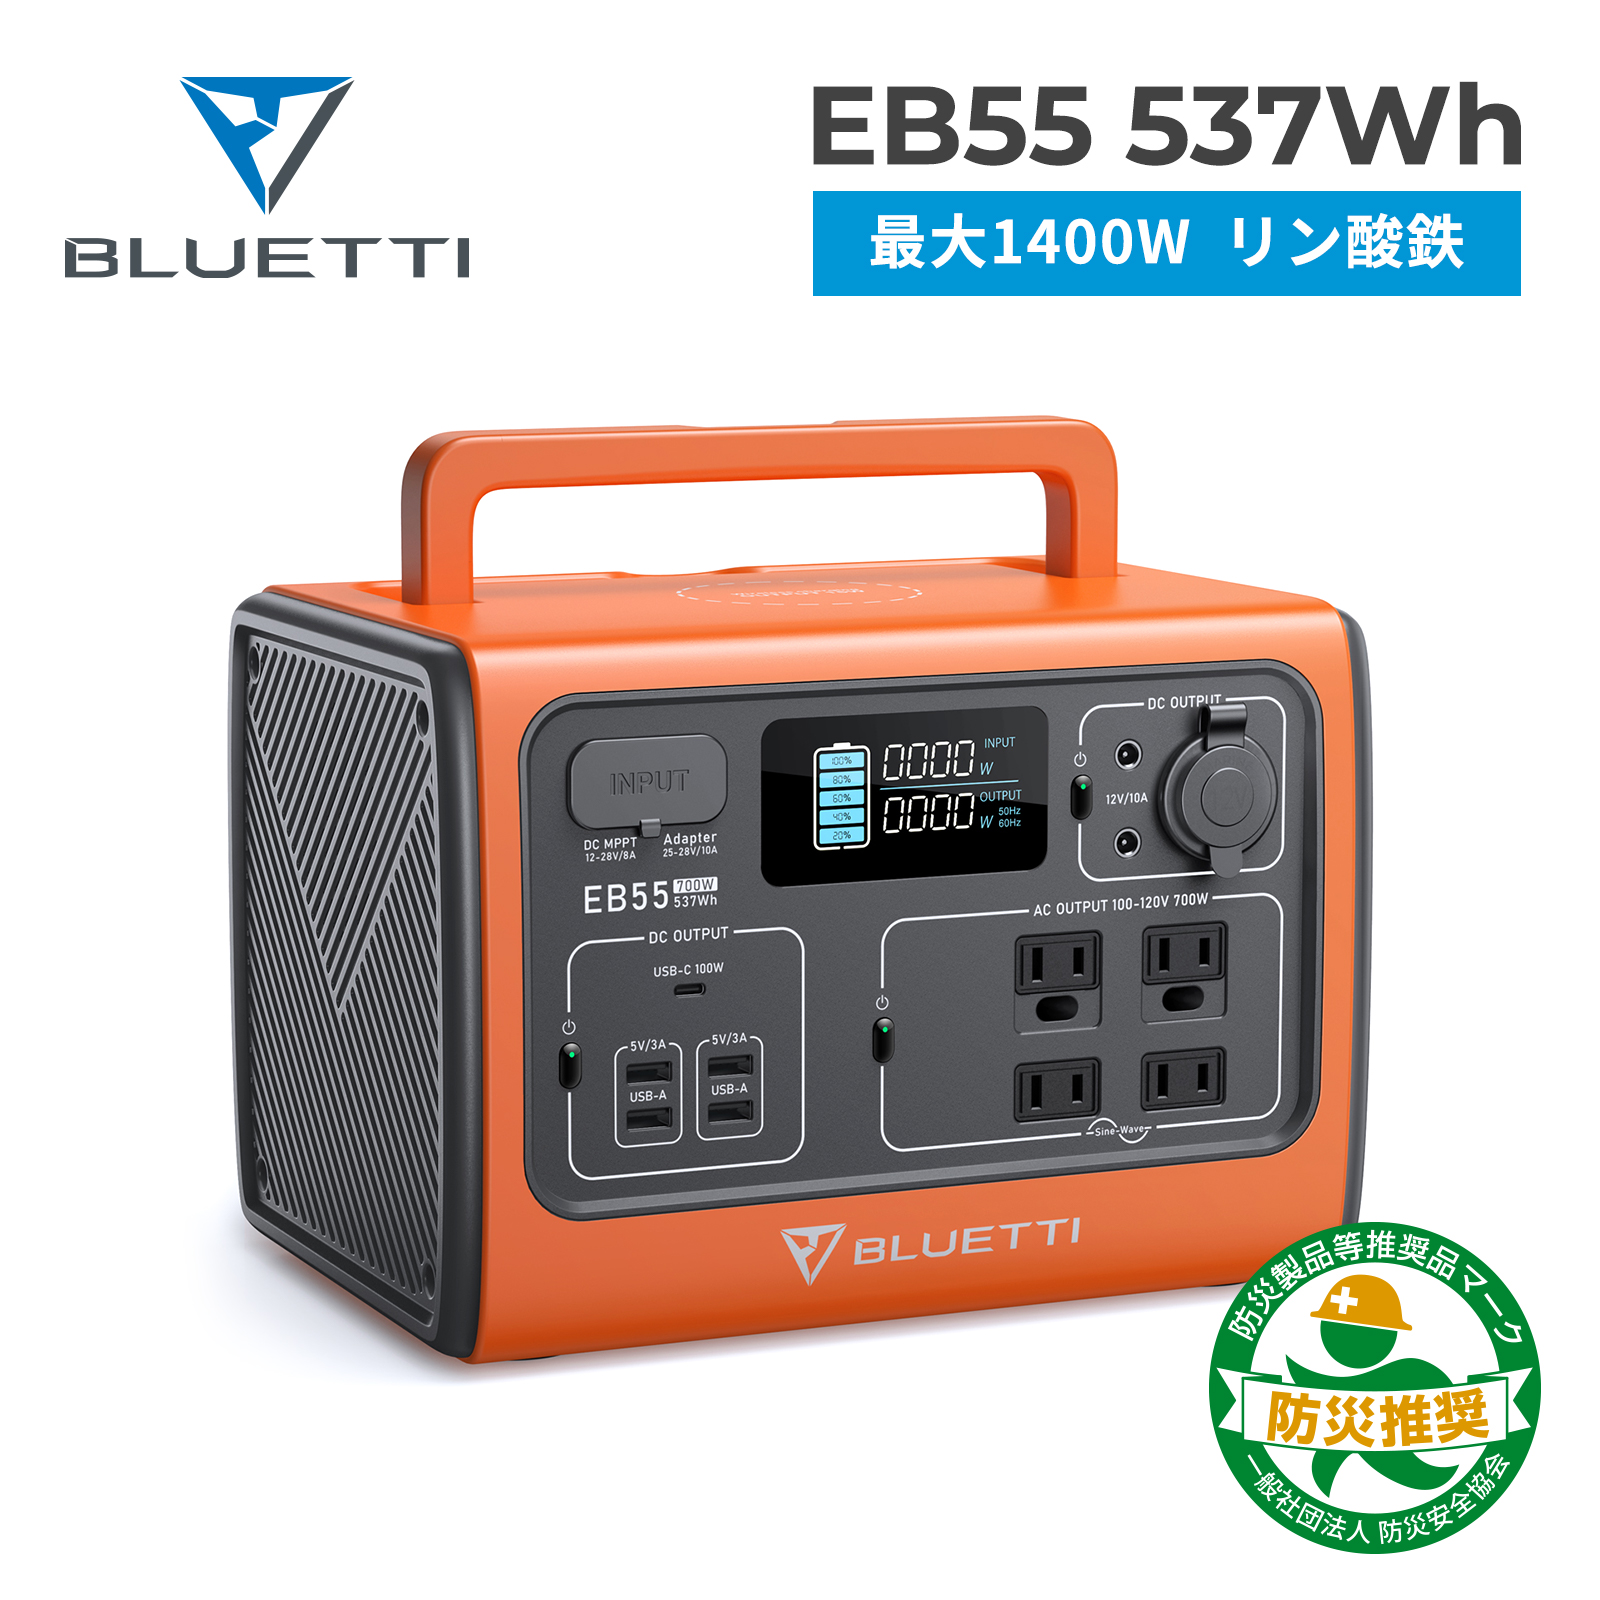 BLUETTI ポータブル電源 EB55 537Wh/700W リン酸鉄 蓄電池 家庭用 軽量 